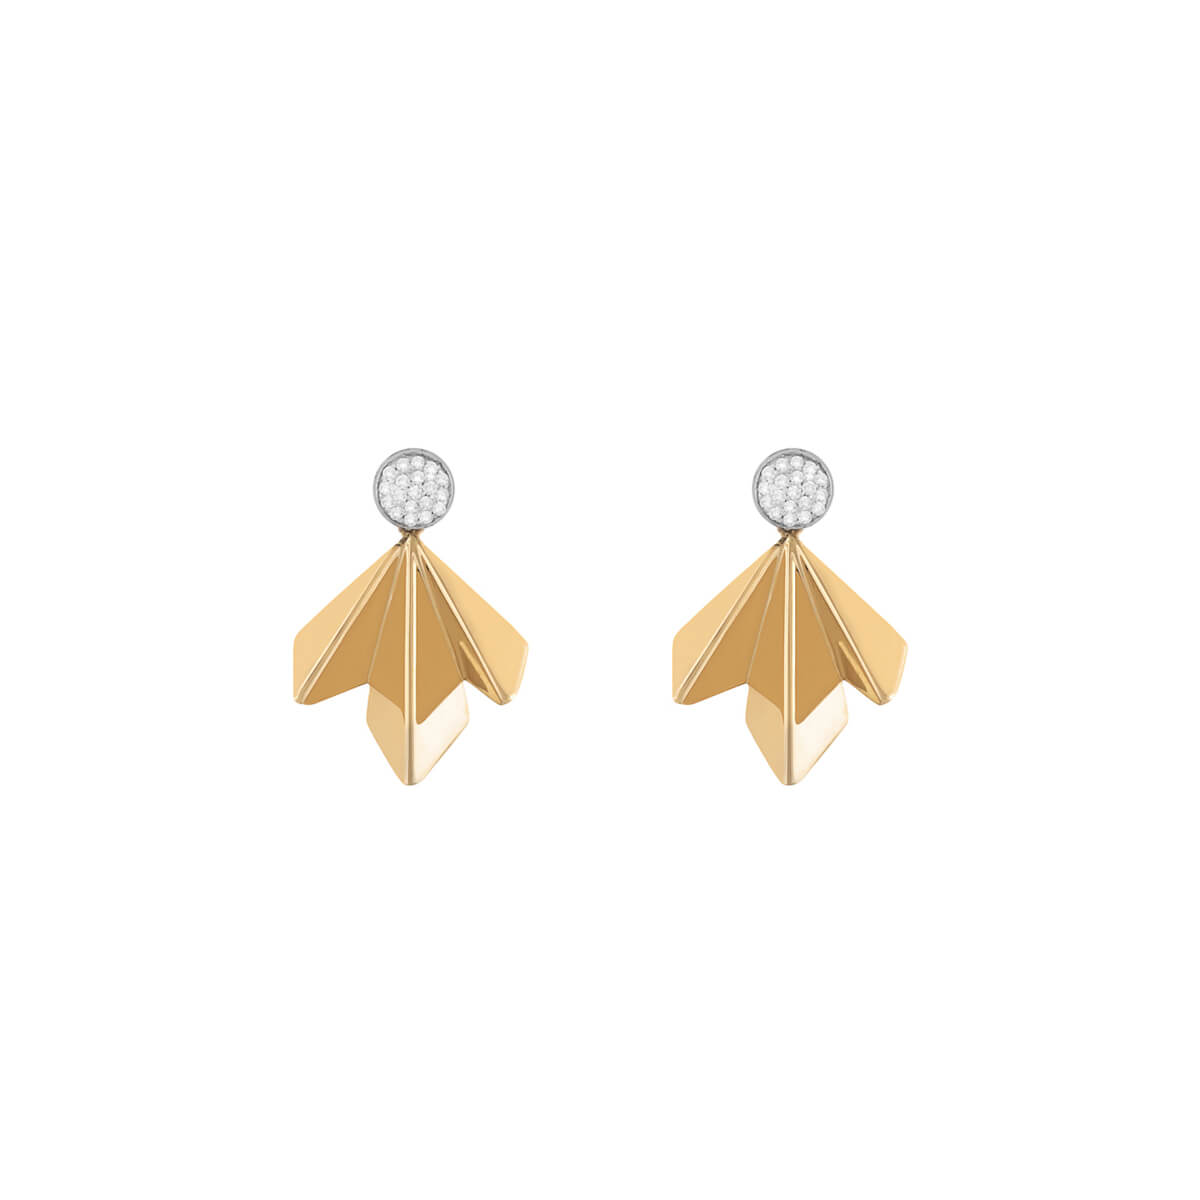 Single Gold Wing Diamond Earrings